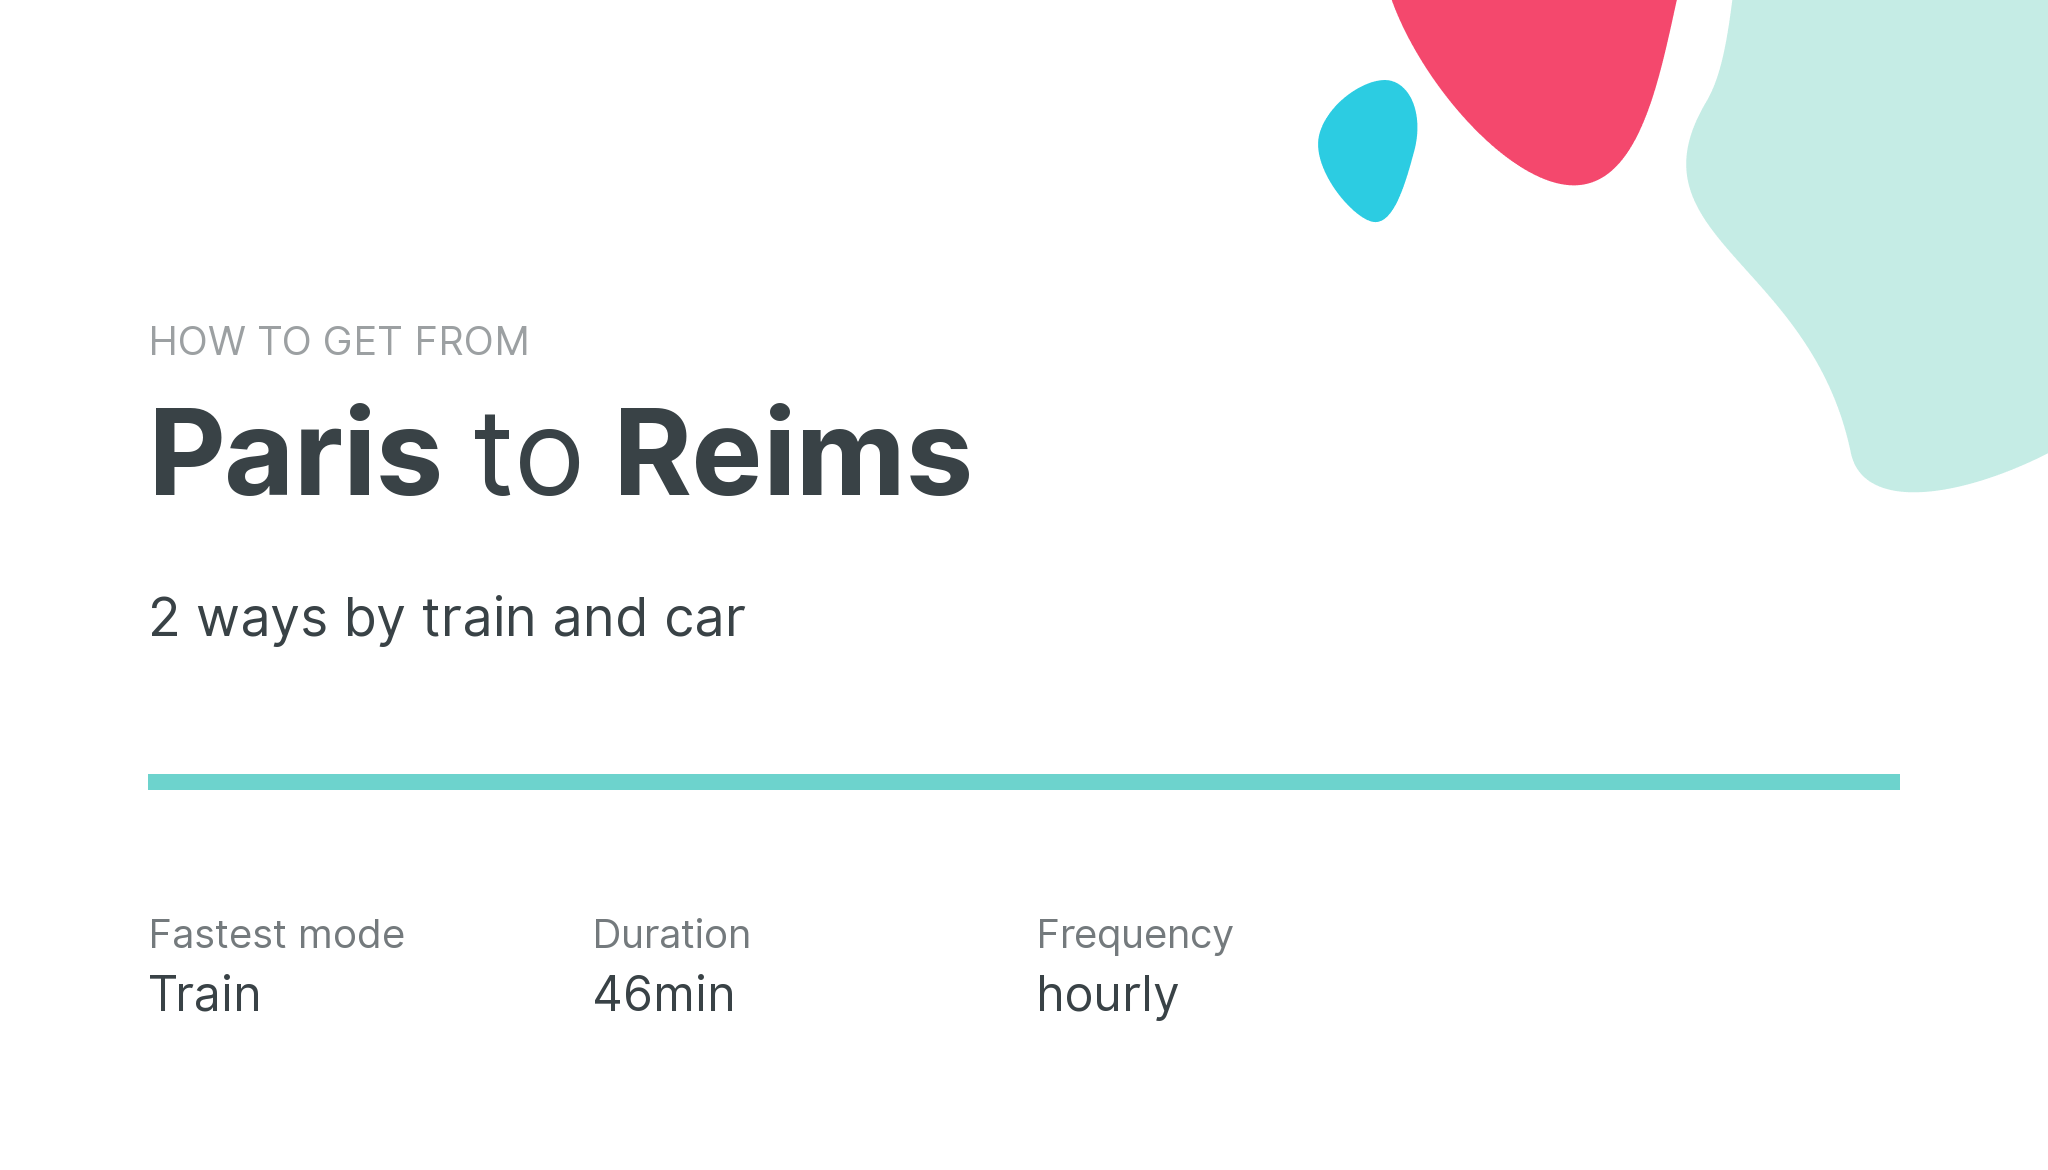 How do I get from Paris to Reims